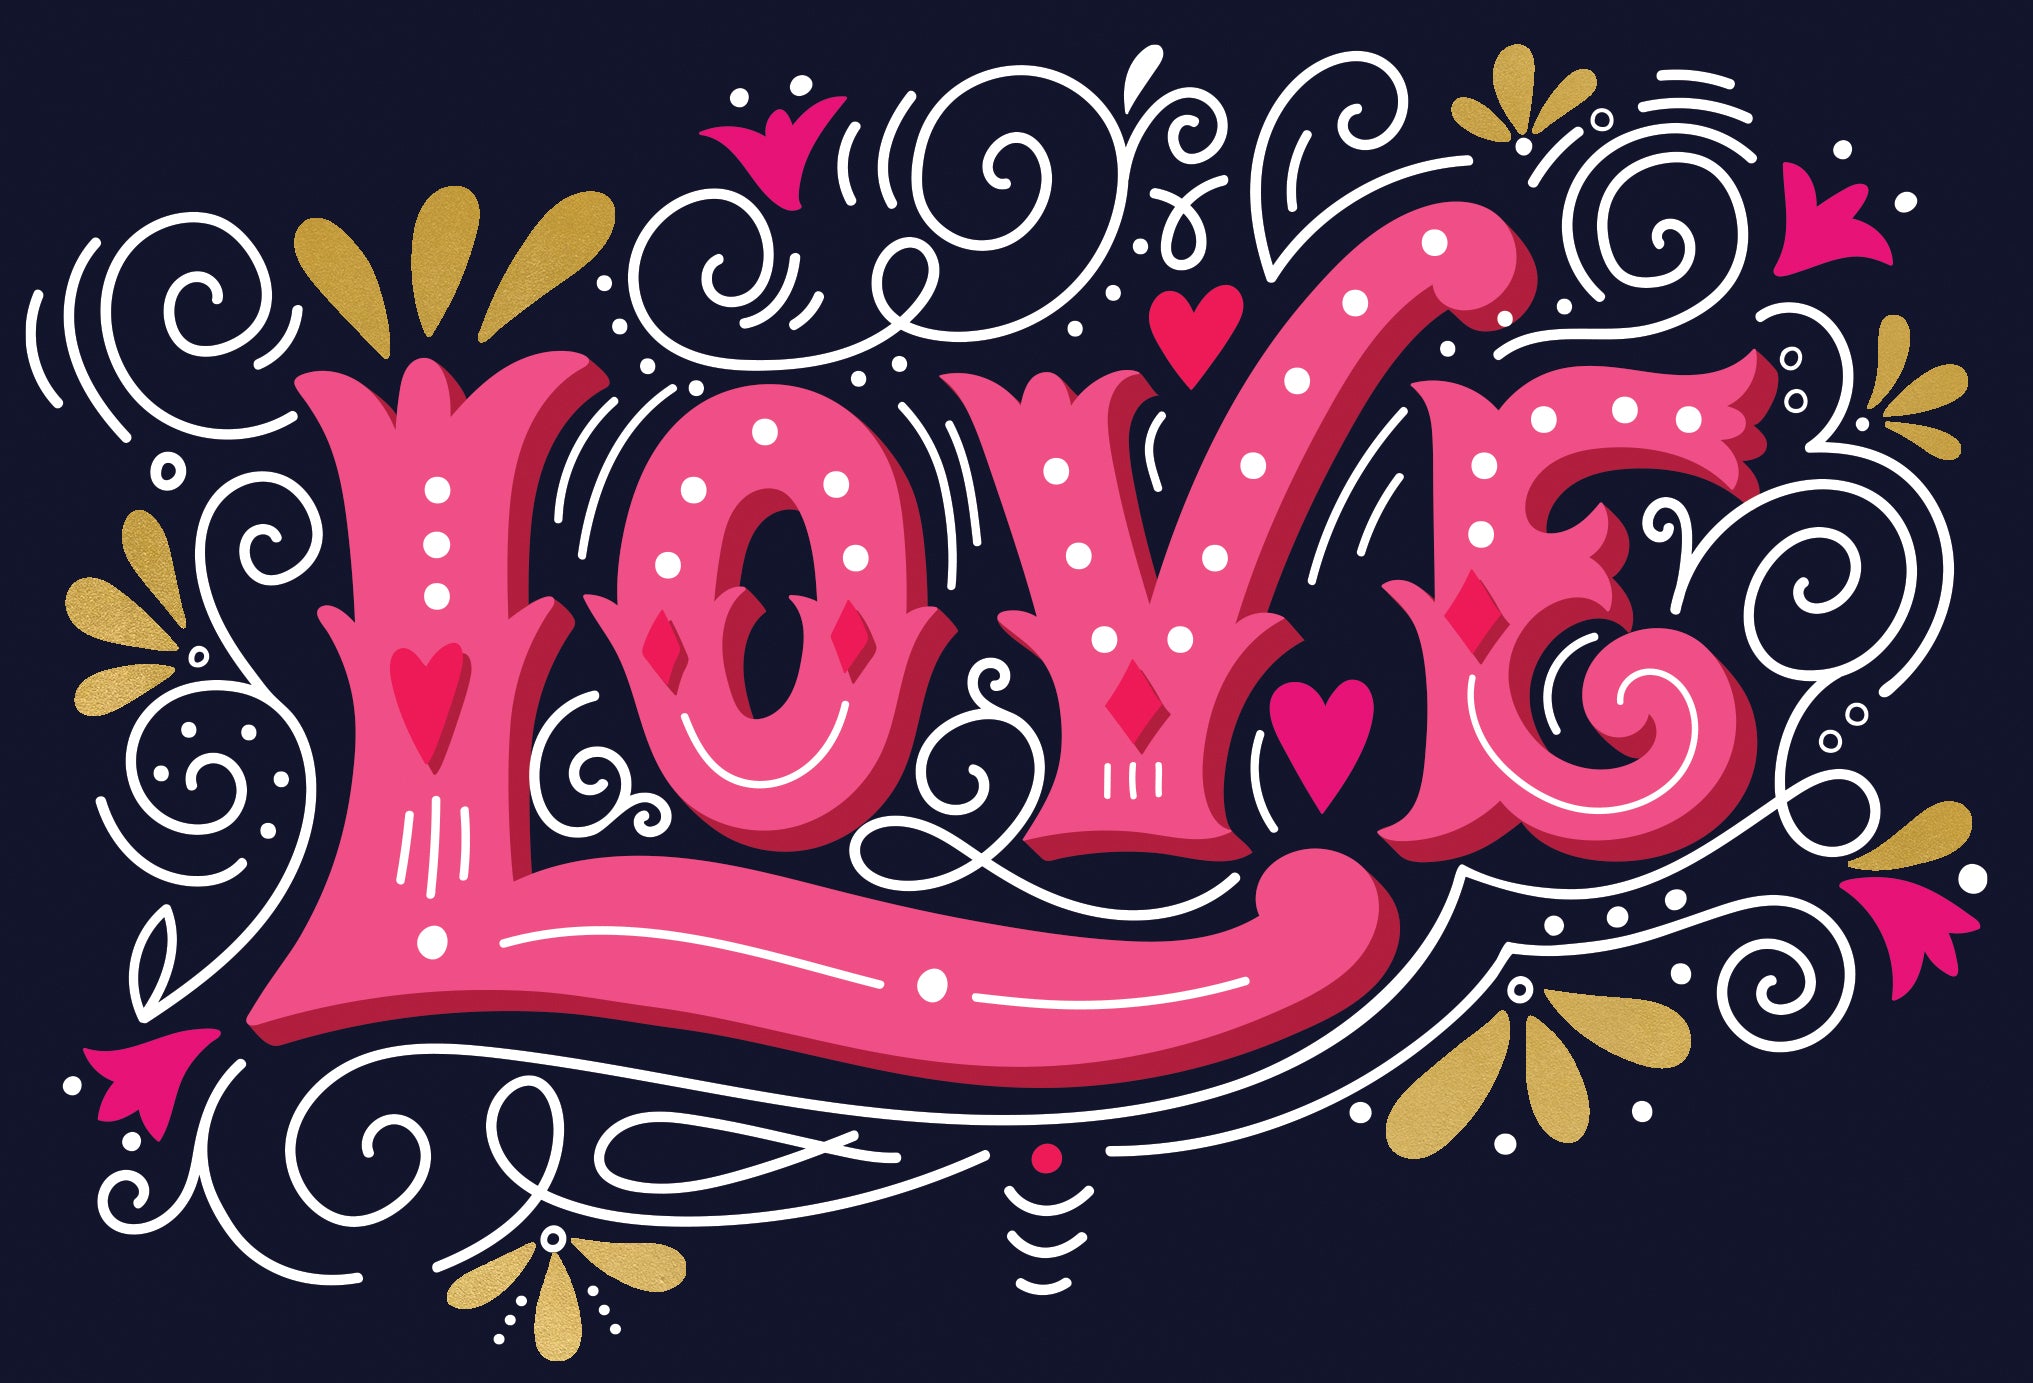 Love Swirls Valentine's Day Card